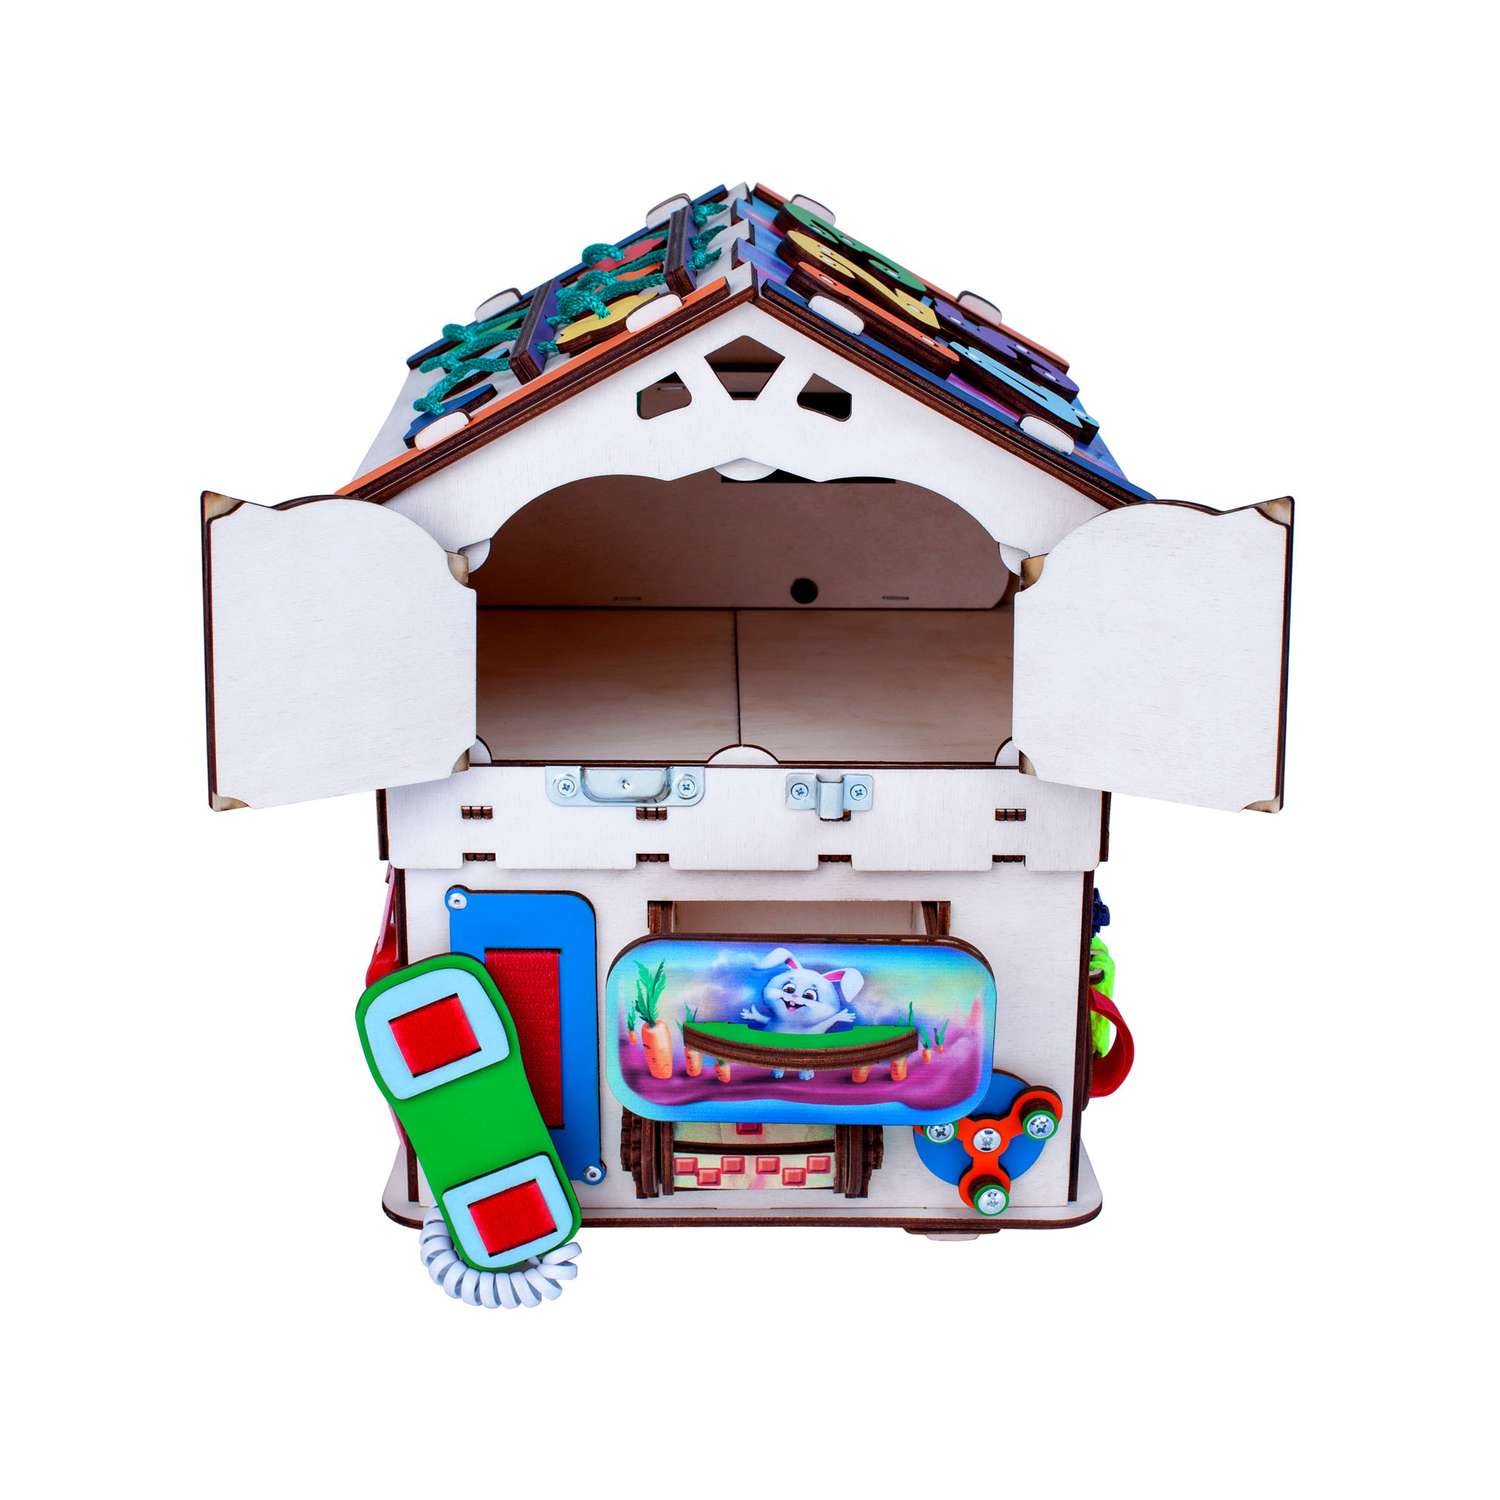 Бизиборд Jolly Kids развивающий бизидом и куб 2 в 1 со светом - фото 9